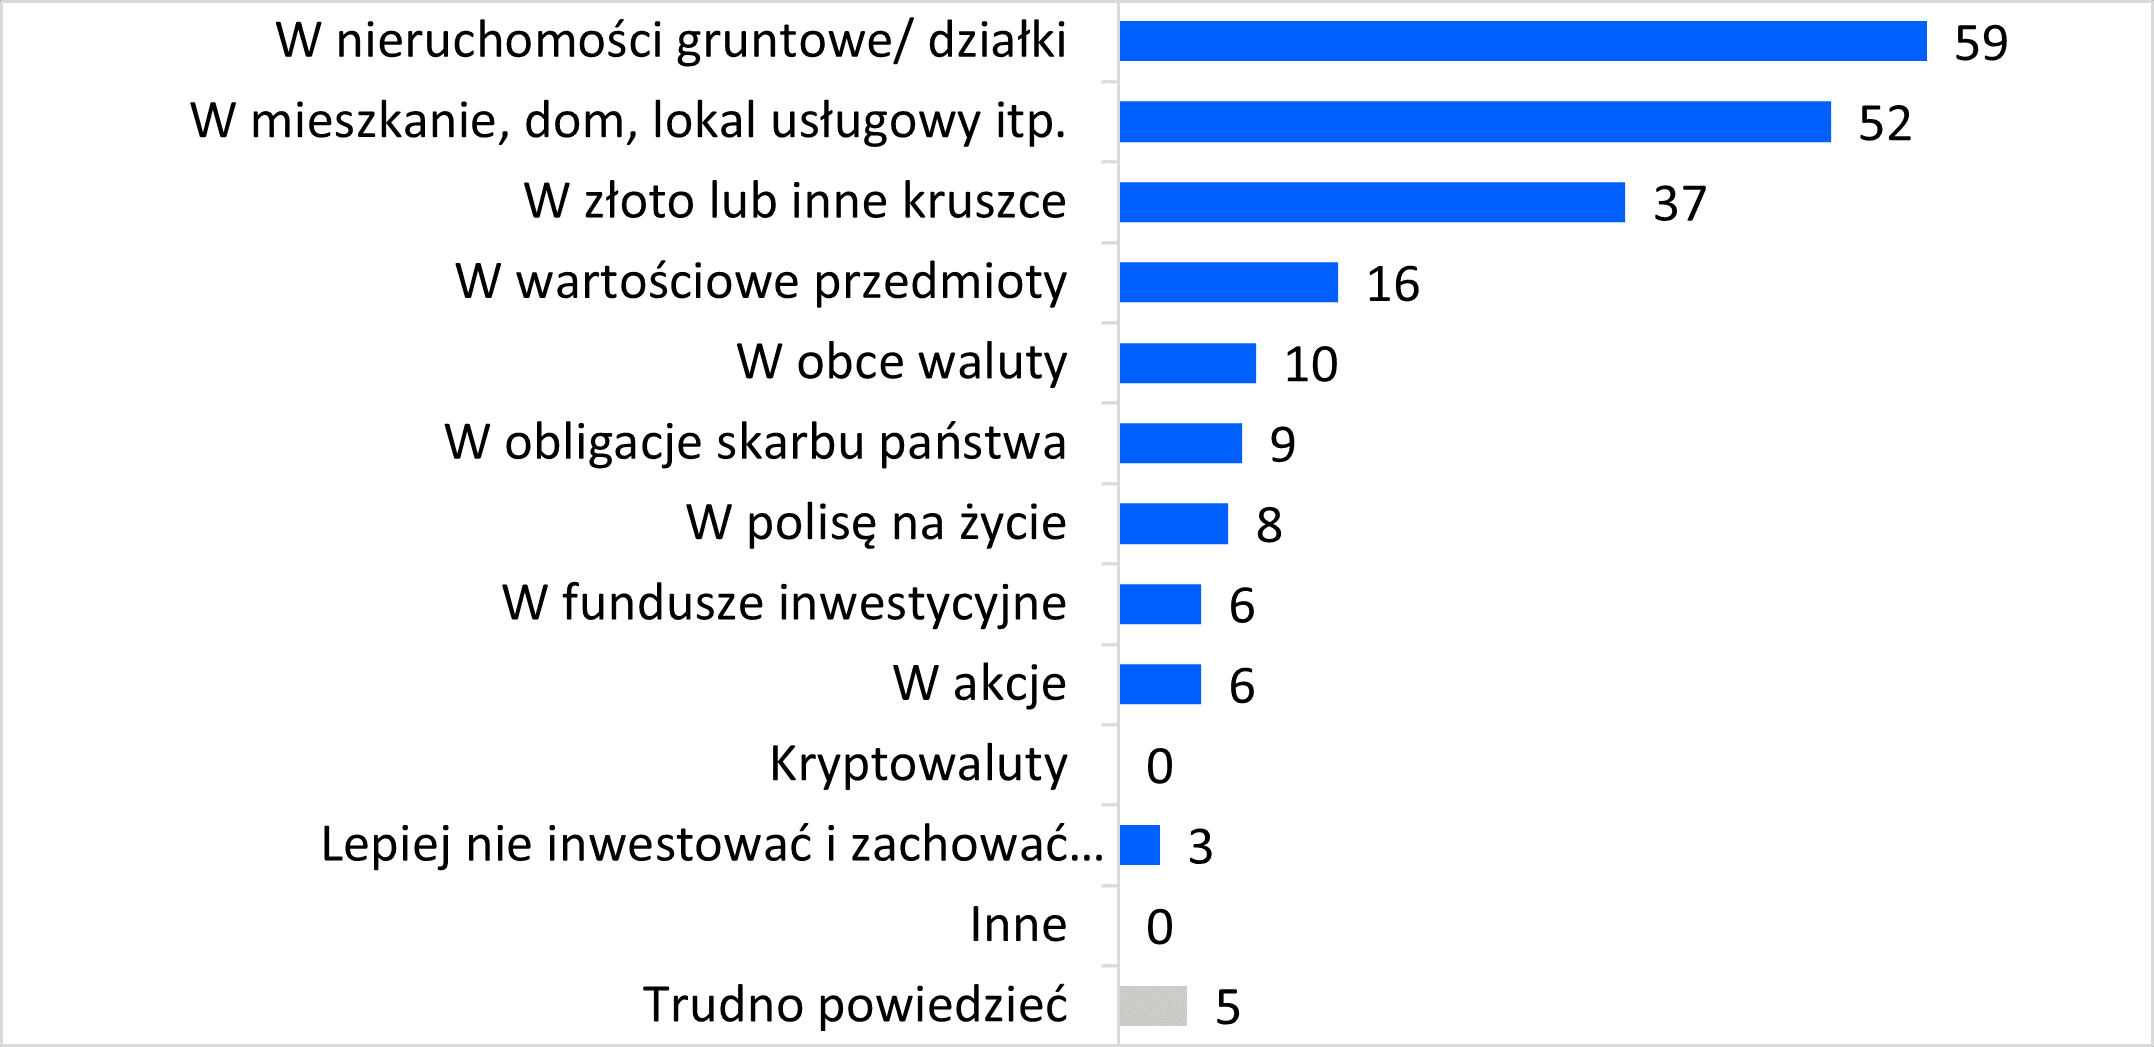 Inwestowanie – najlepsze opcje według Polaków